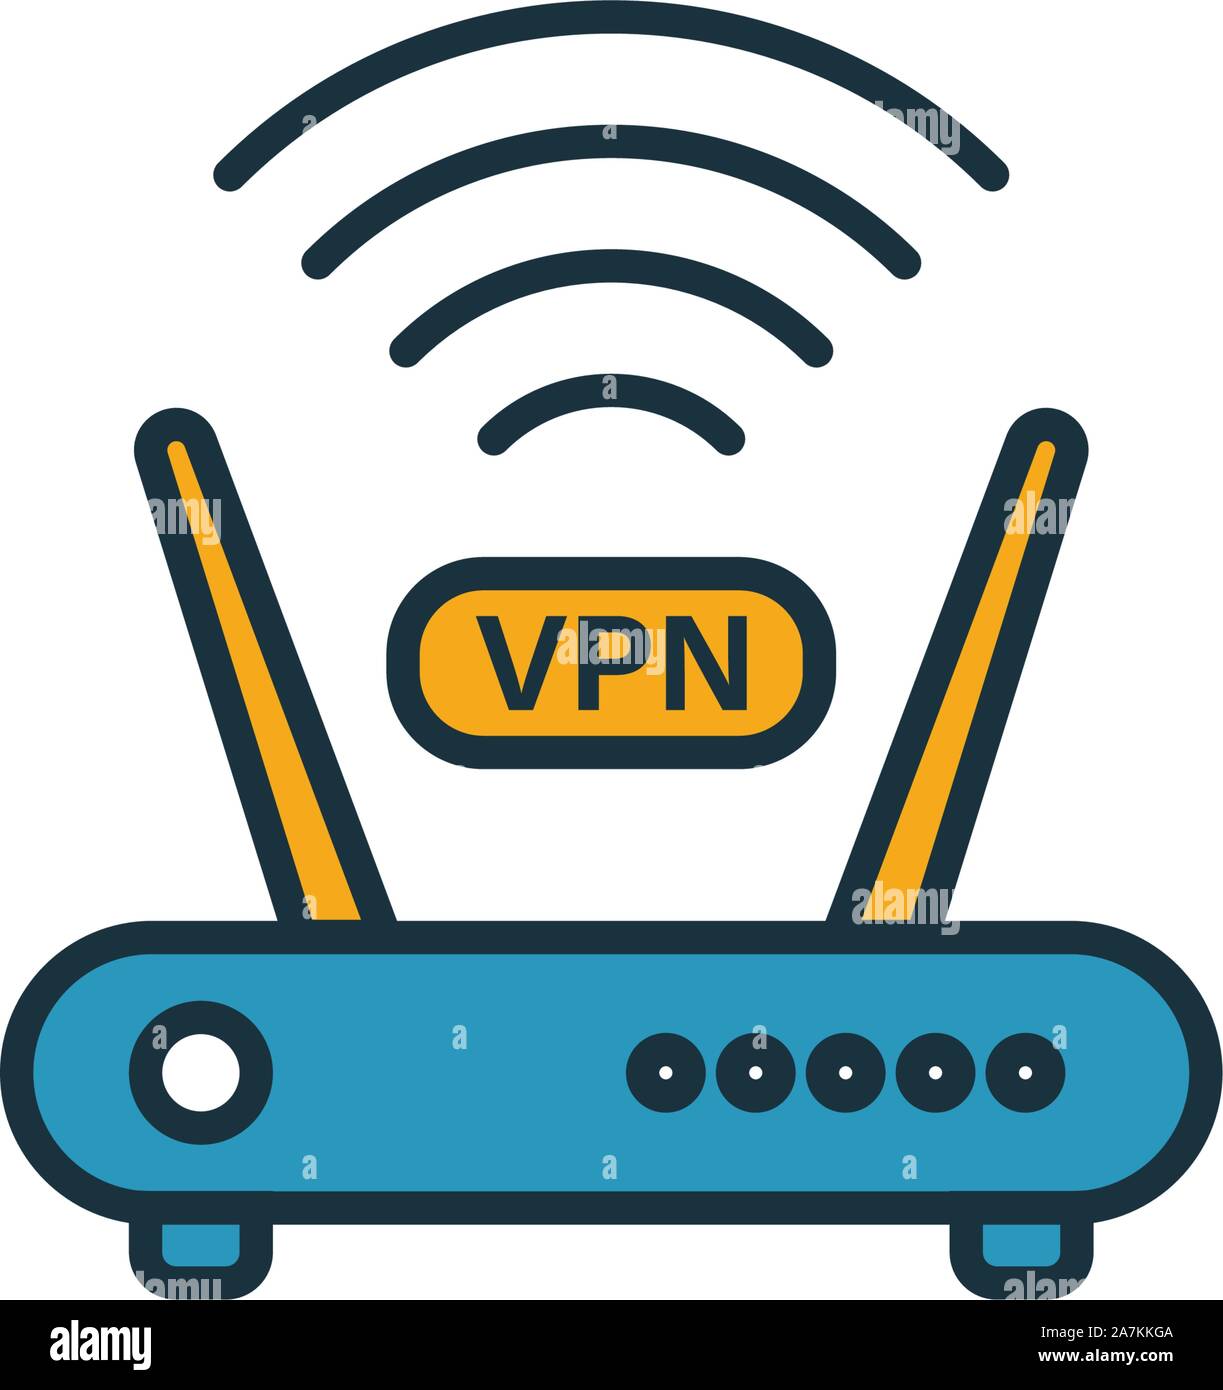 L'icône du routeur VPN. L'élément de la simple collection d'icônes